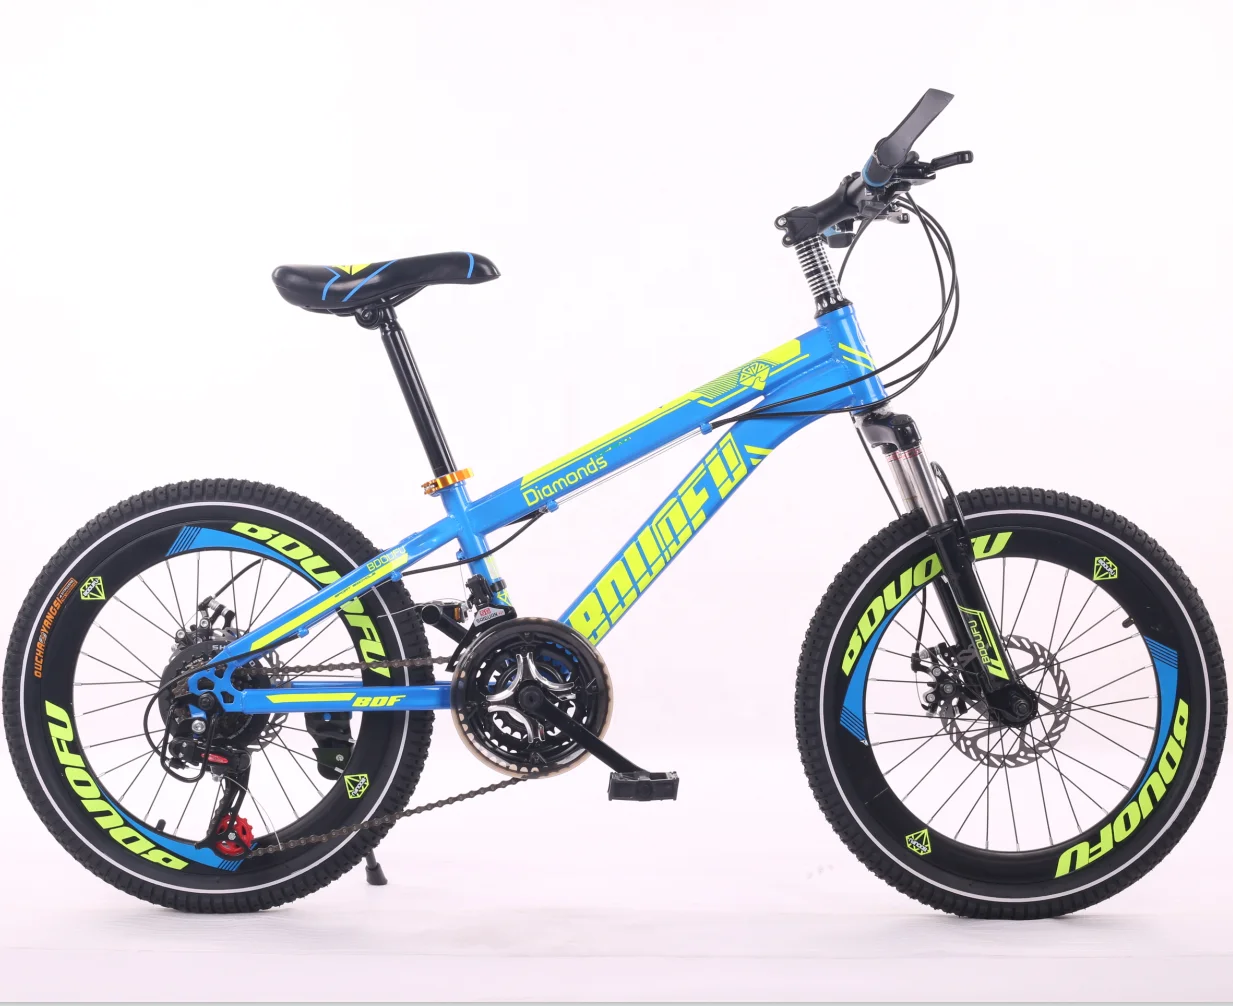 Подростковый велосипед для мальчика 8 10 лет. BMX GTR 29 велосипед. Велосипед Твиттер МТБ, для детей 10 лет карбон. Велосипед для мальчика 10 лет. Скоростной велосипед для мальчика 10 лет.